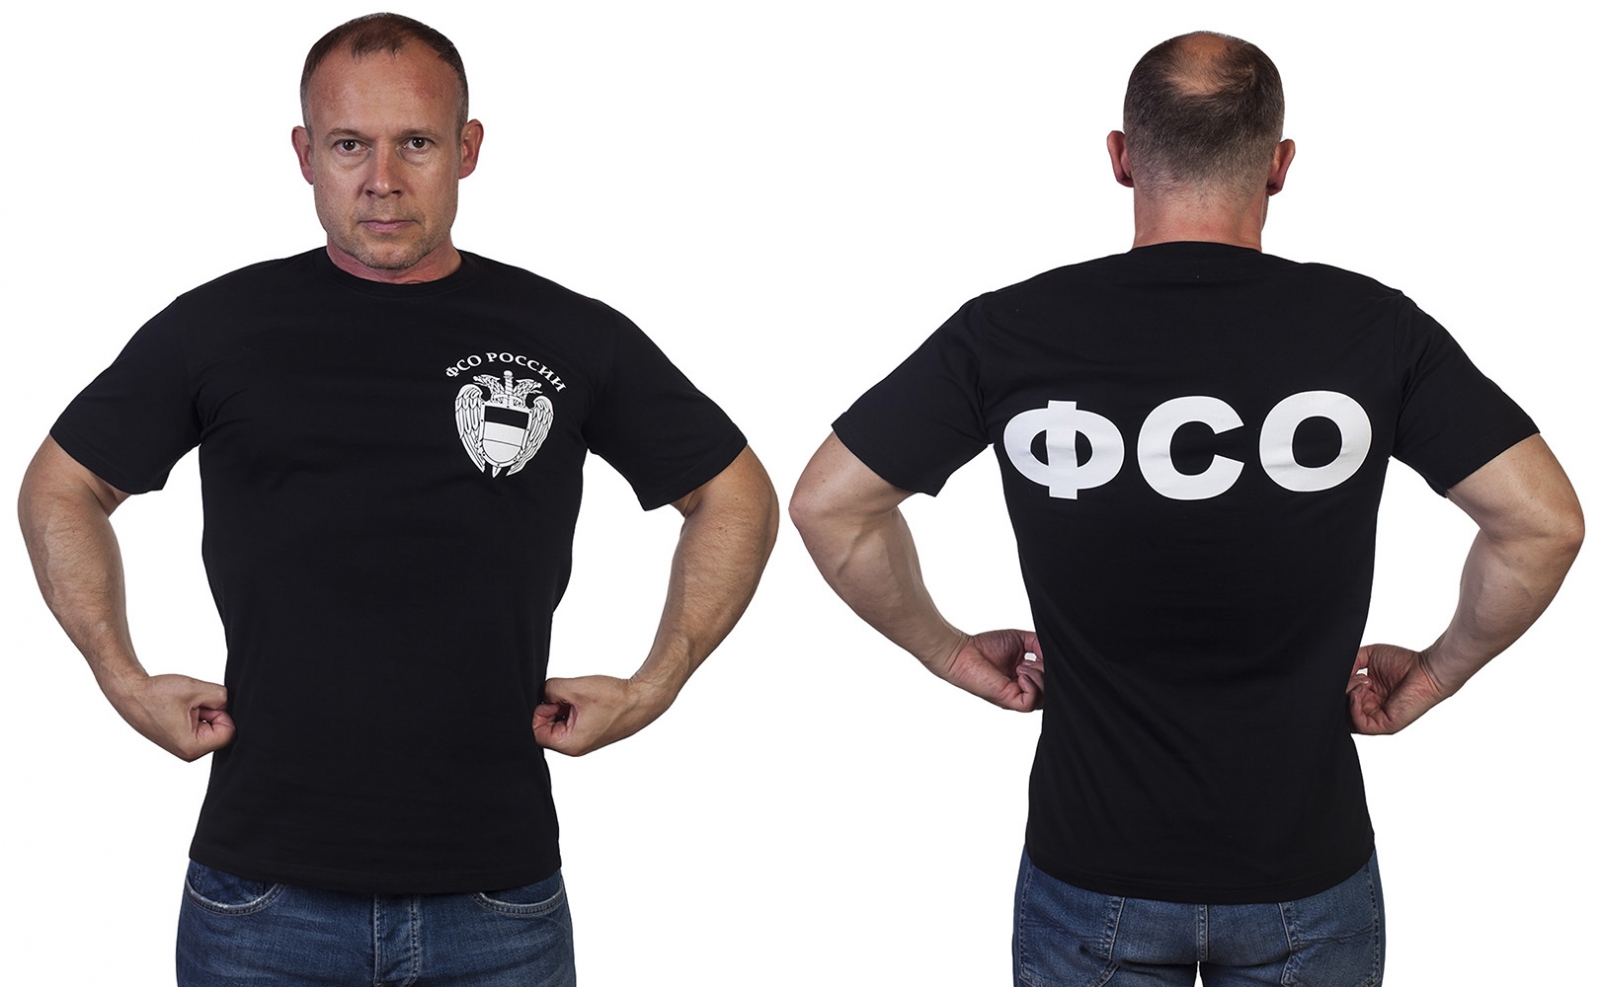 Купить футболки ФСО России оптом и в розницу